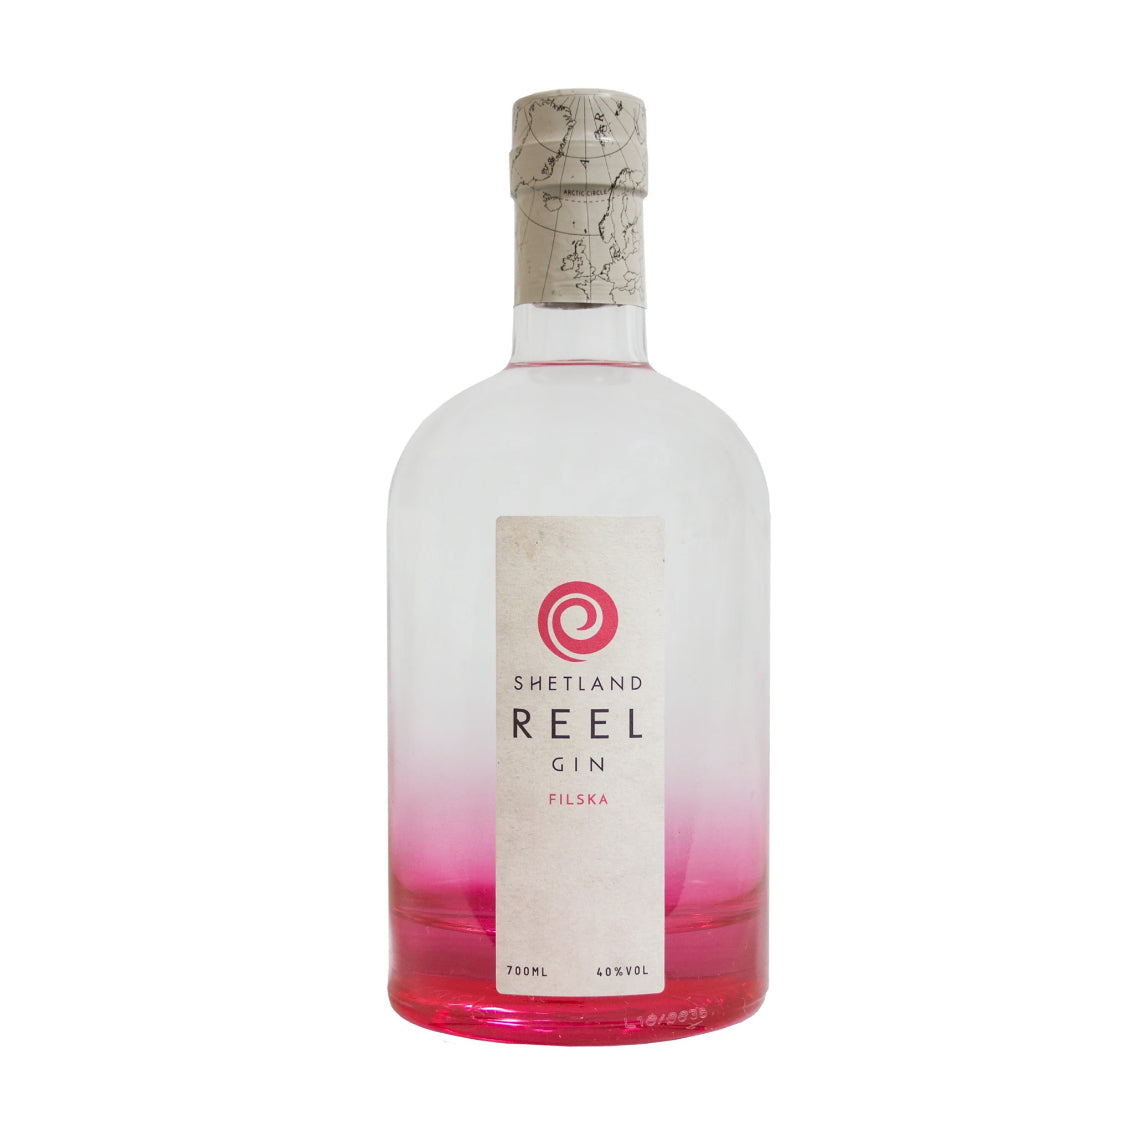 Shetland Reel - Filska Gin